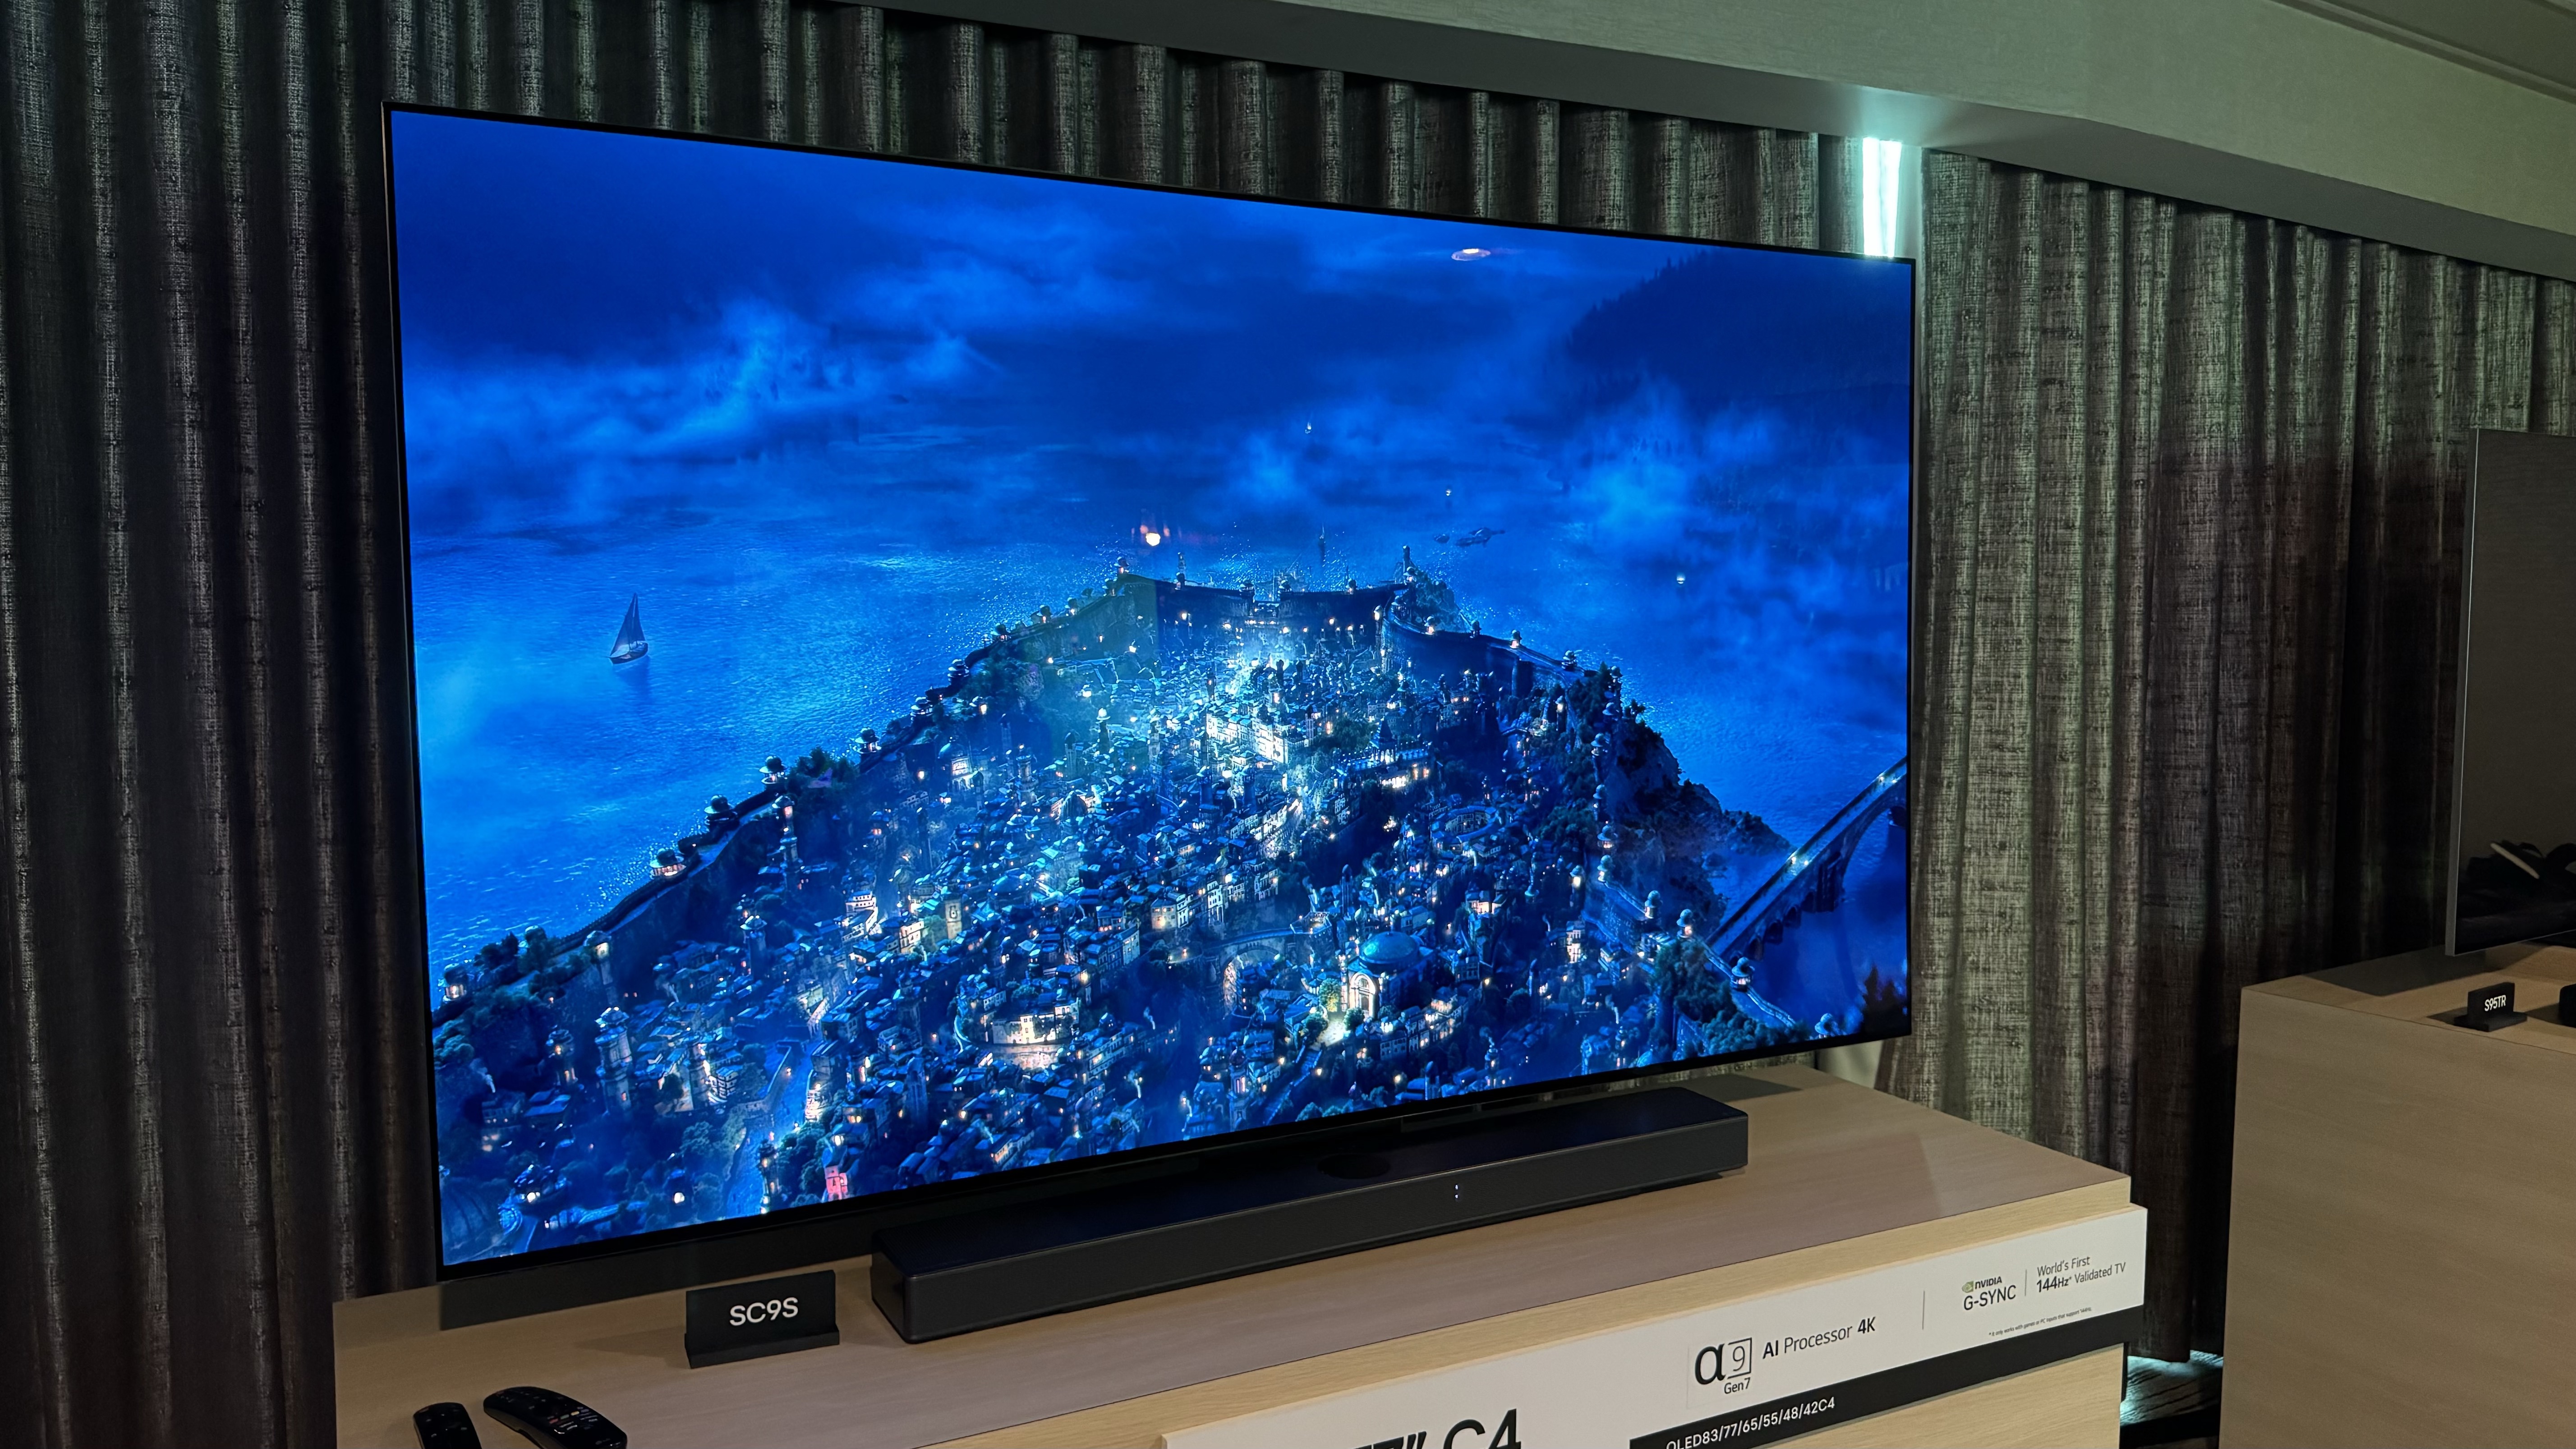 تم تصوير تلفزيون LG C4 OLED على حامل مقابل شاشة رمادية داكنة